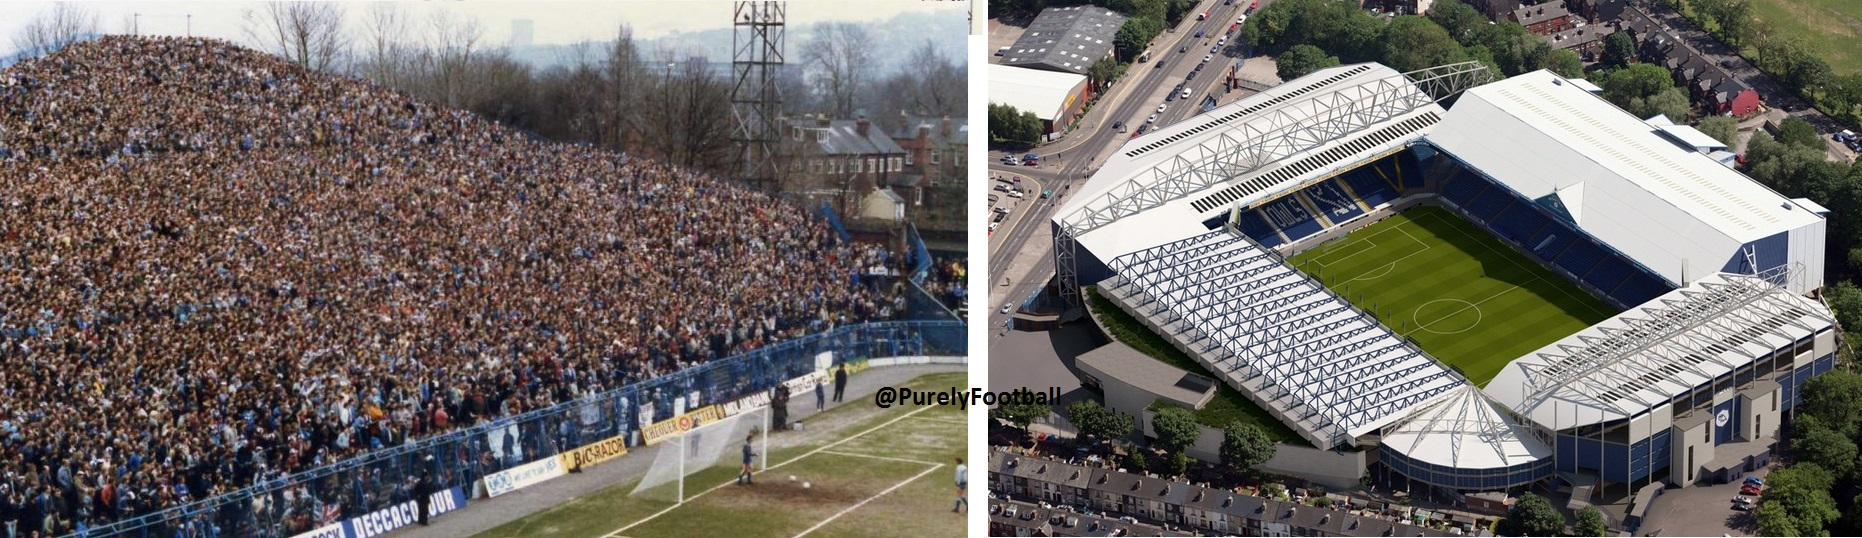 گزارش تصویری: از گذشته تا به حال استادیوم های فوتبال